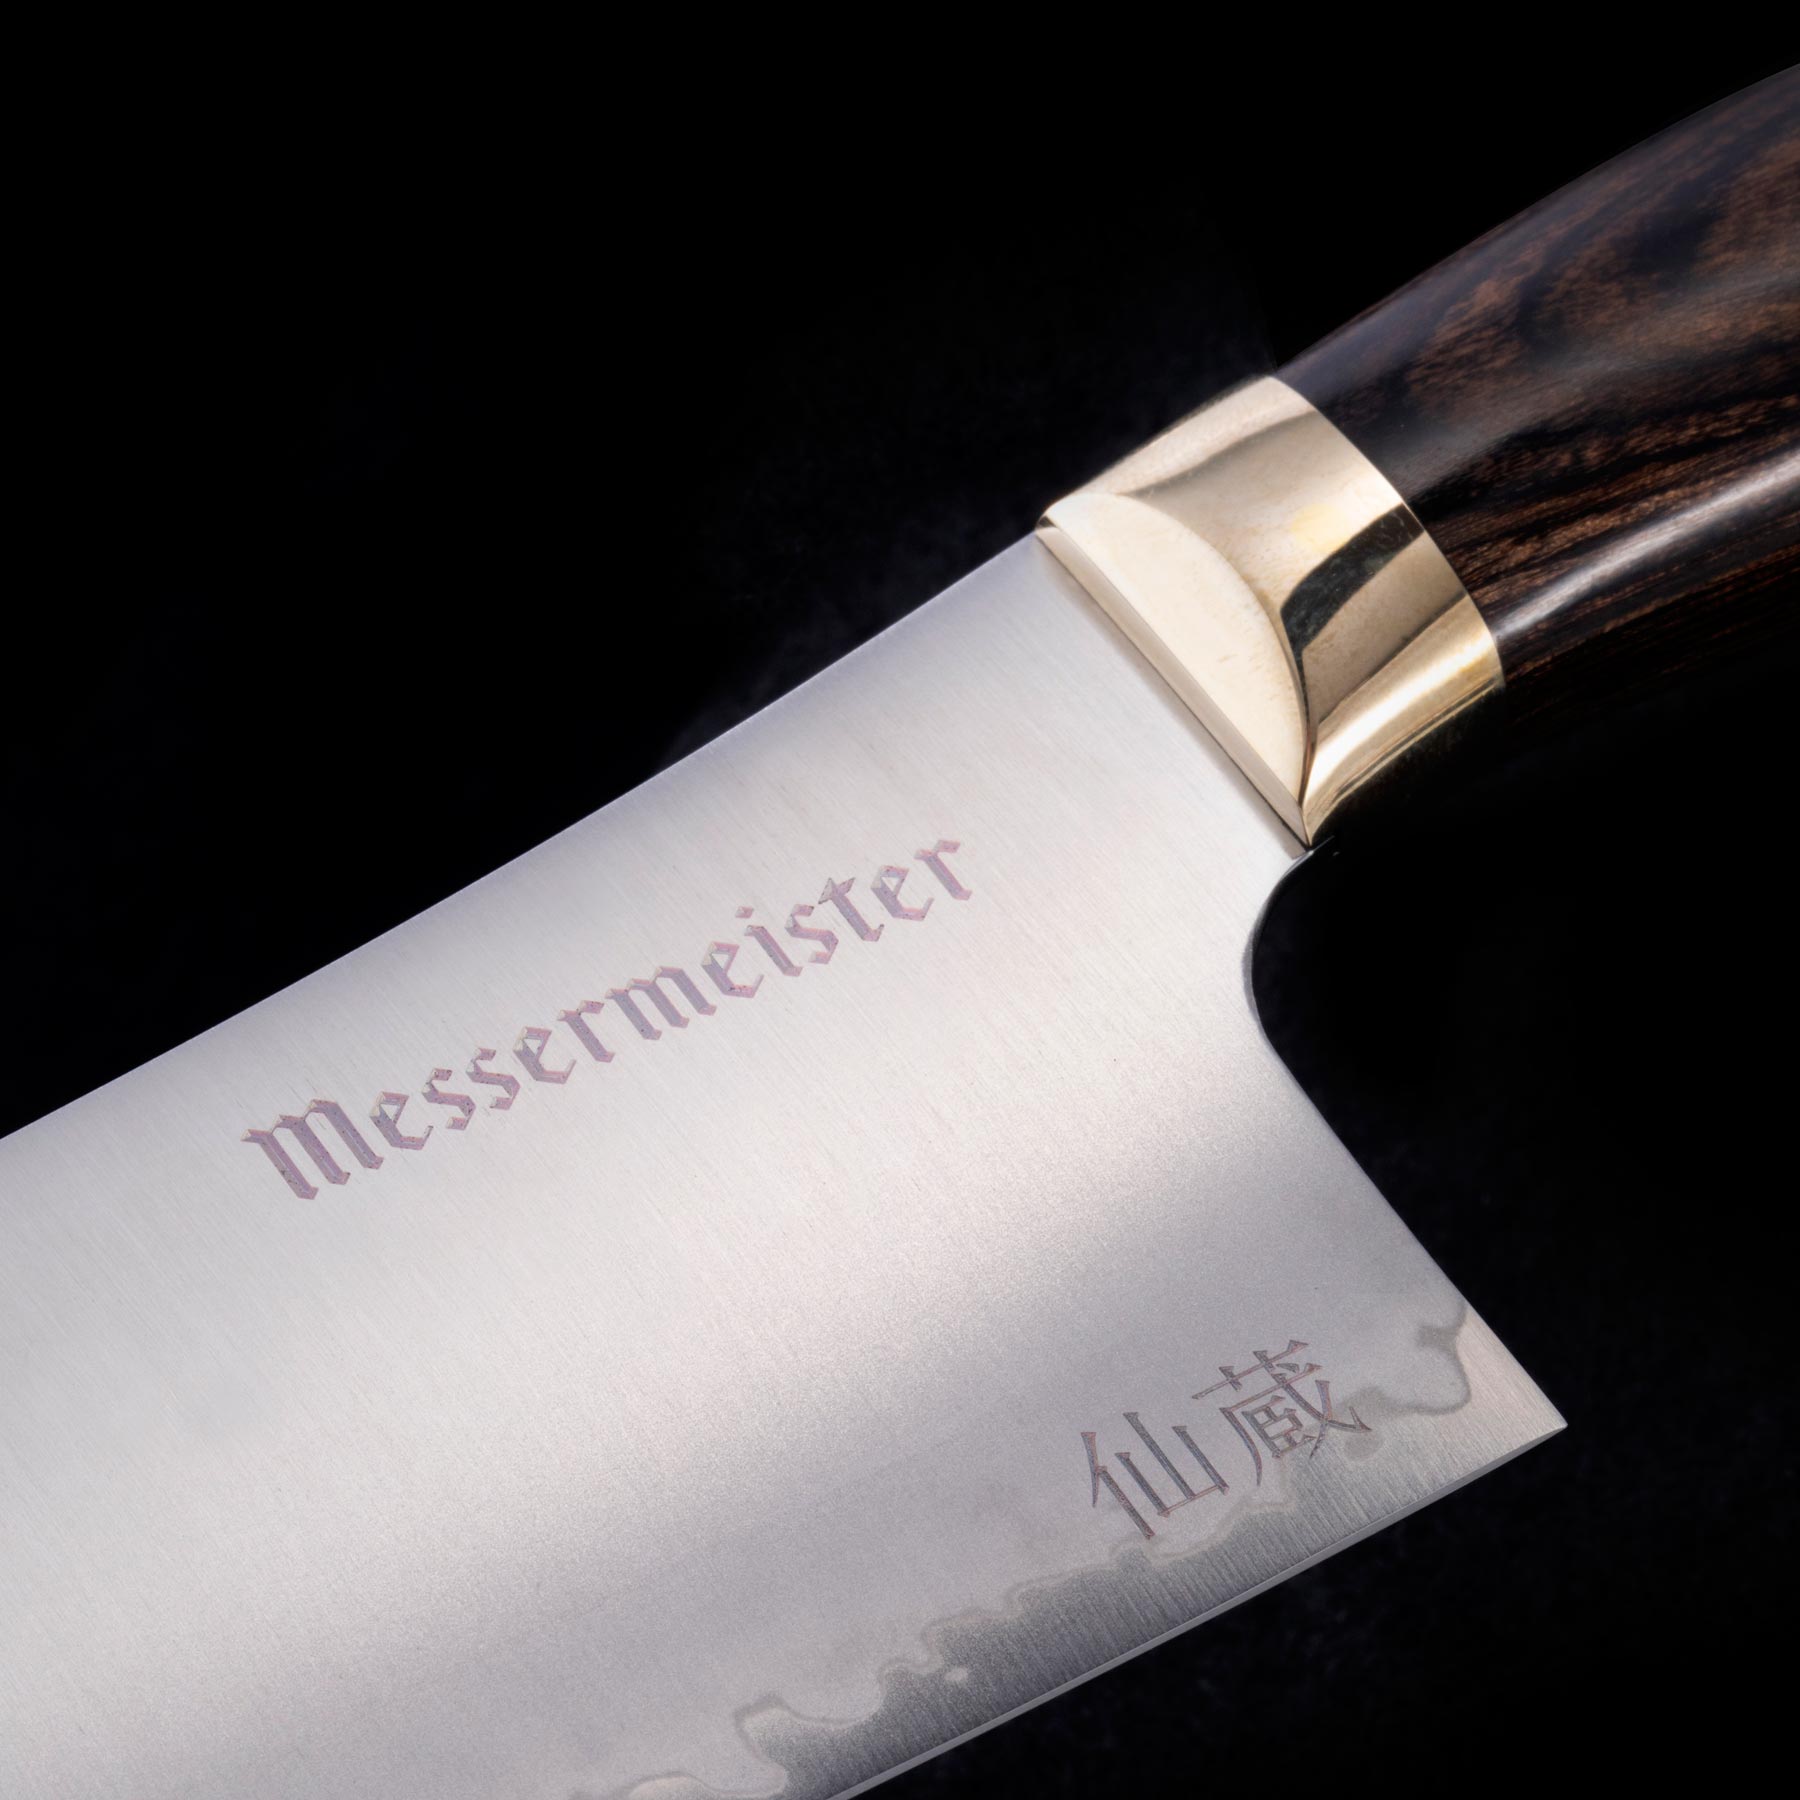 Kawashima 8 Inch Chef's Knife